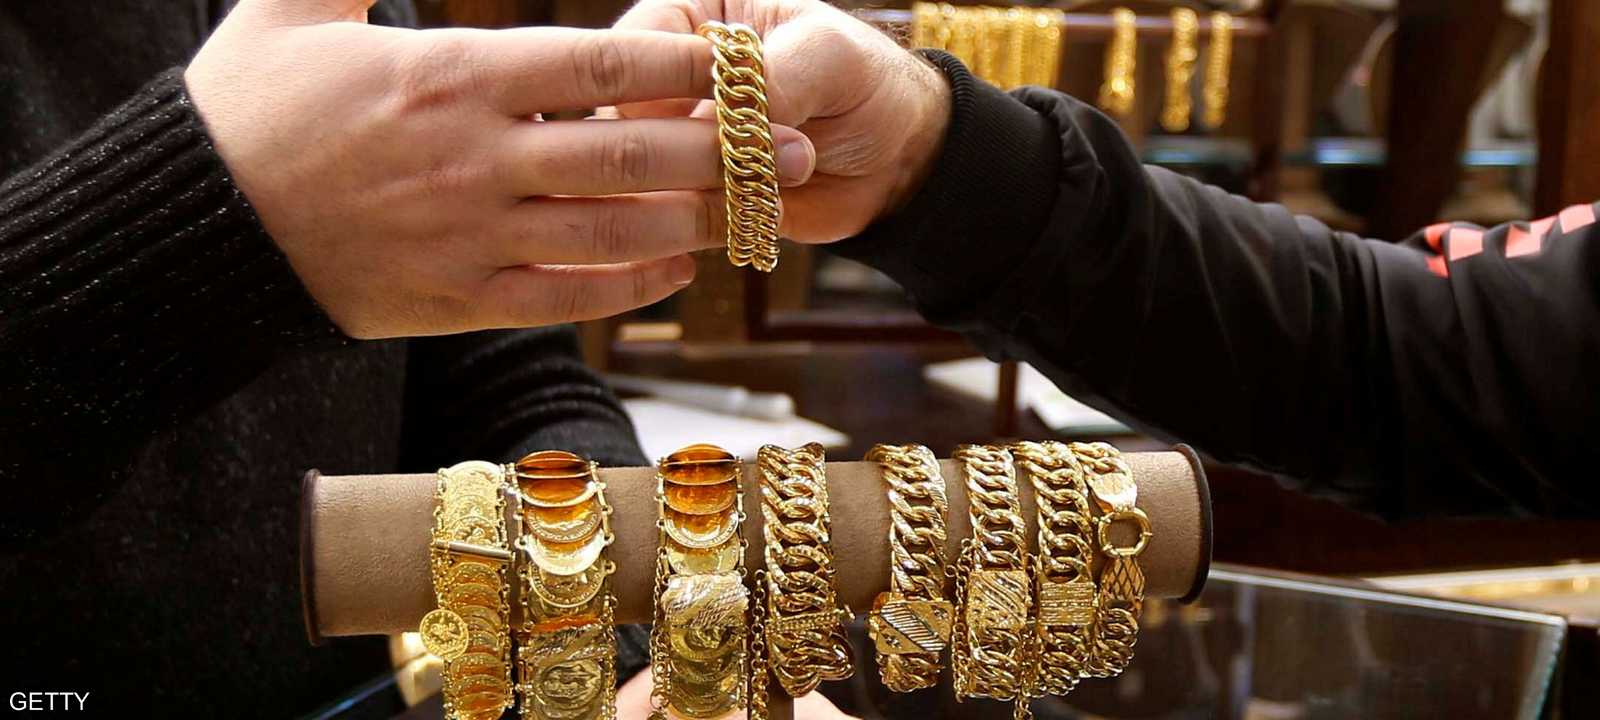 أحد محال بيع الذهب في العاصمة اللبنانية بيروت